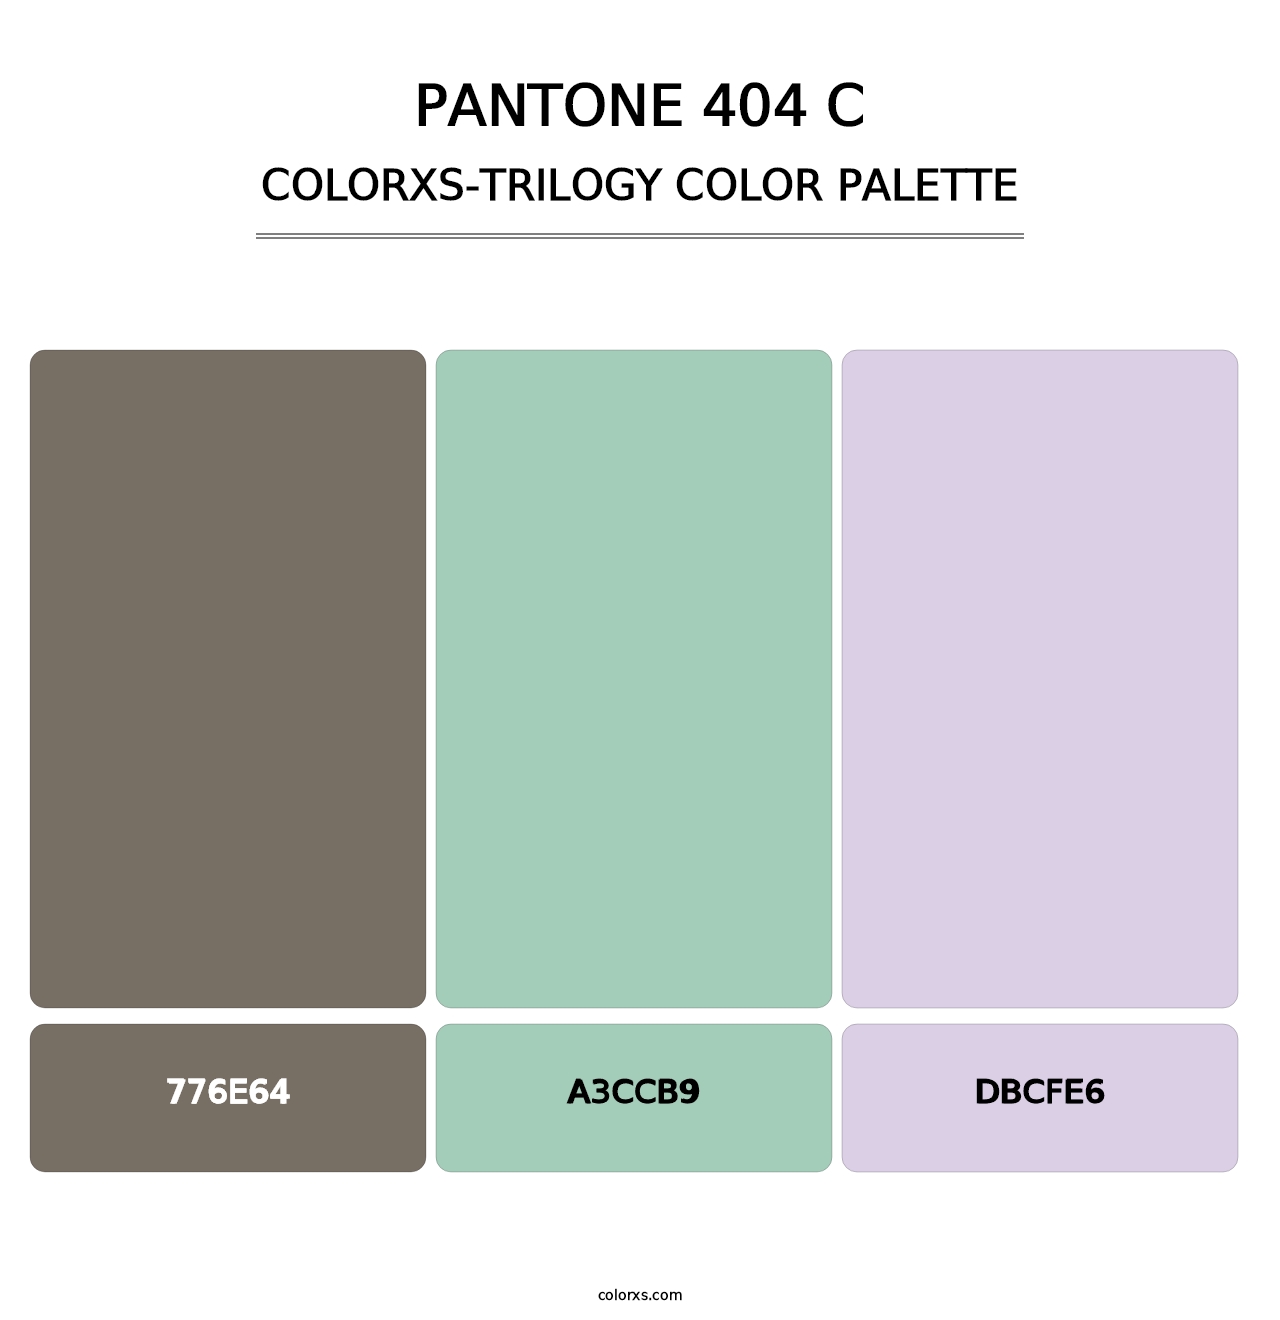 PANTONE 404 C - Colorxs Trilogy Palette